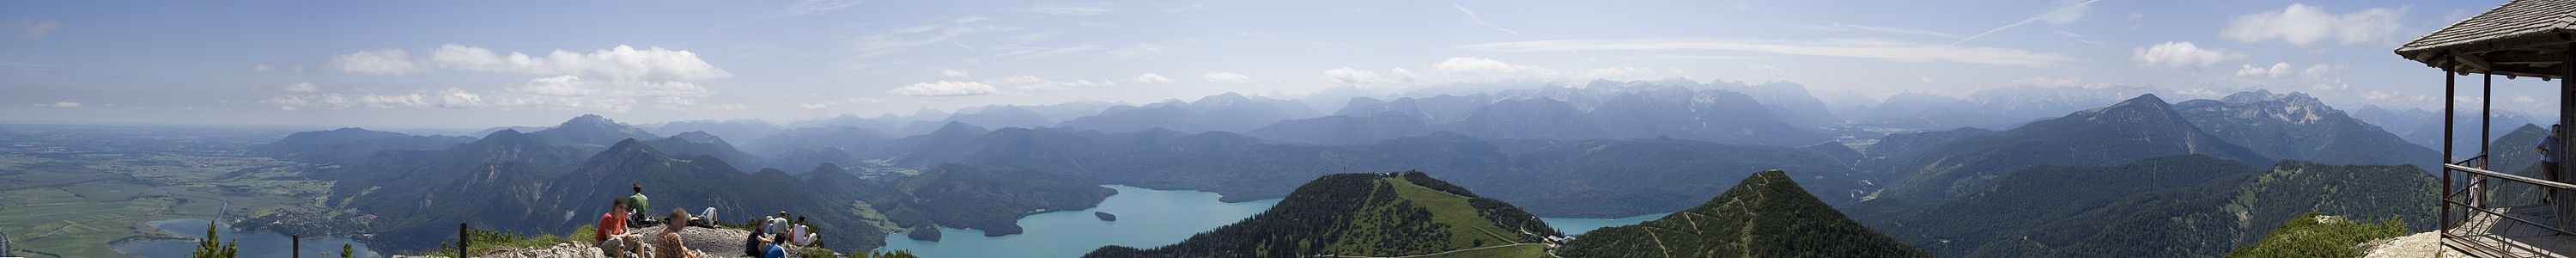 Panoramabild vom Herzogstand v.l.n.r.: Kochelsee, Benediktenwand, Walchensee, Bergstation Herzogstandbahn, Westliche Karwendelspitze, Wallgau/Mittenwald, Wettersteinmassiv, Zugspitze, Ammergebirge